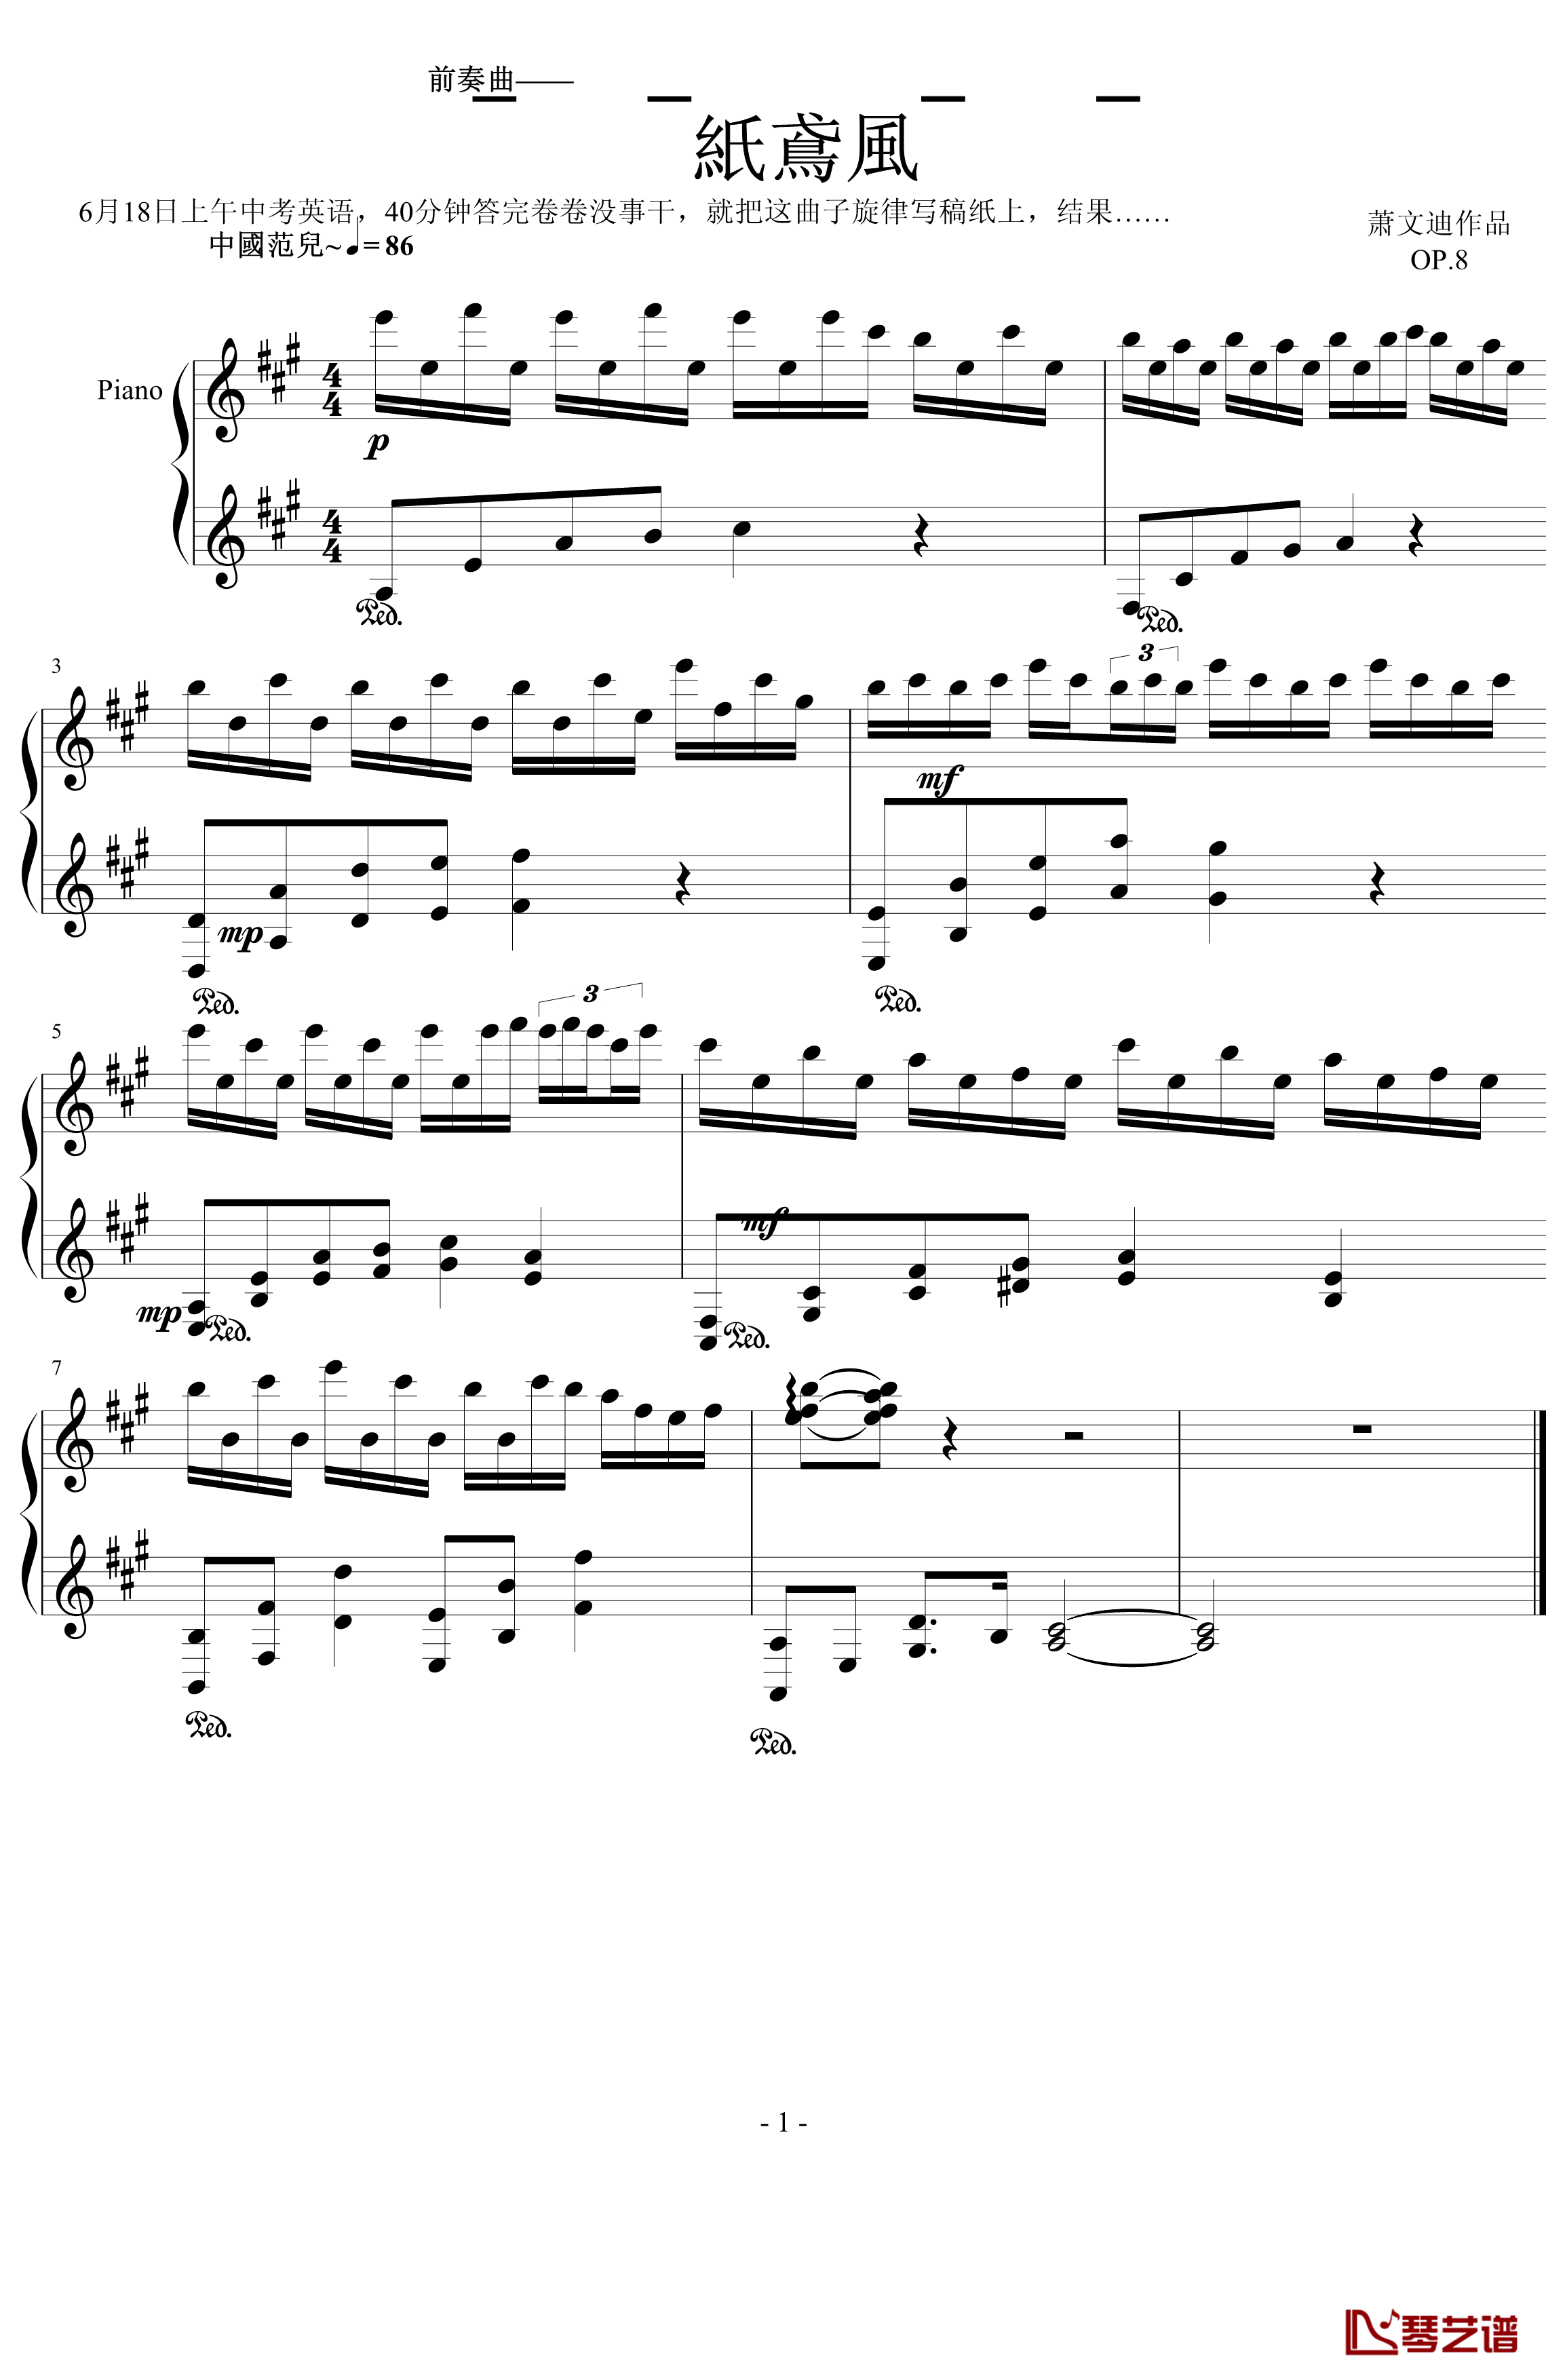 中国范儿钢琴谱-纨绔公子-纸鸢烟雨风1